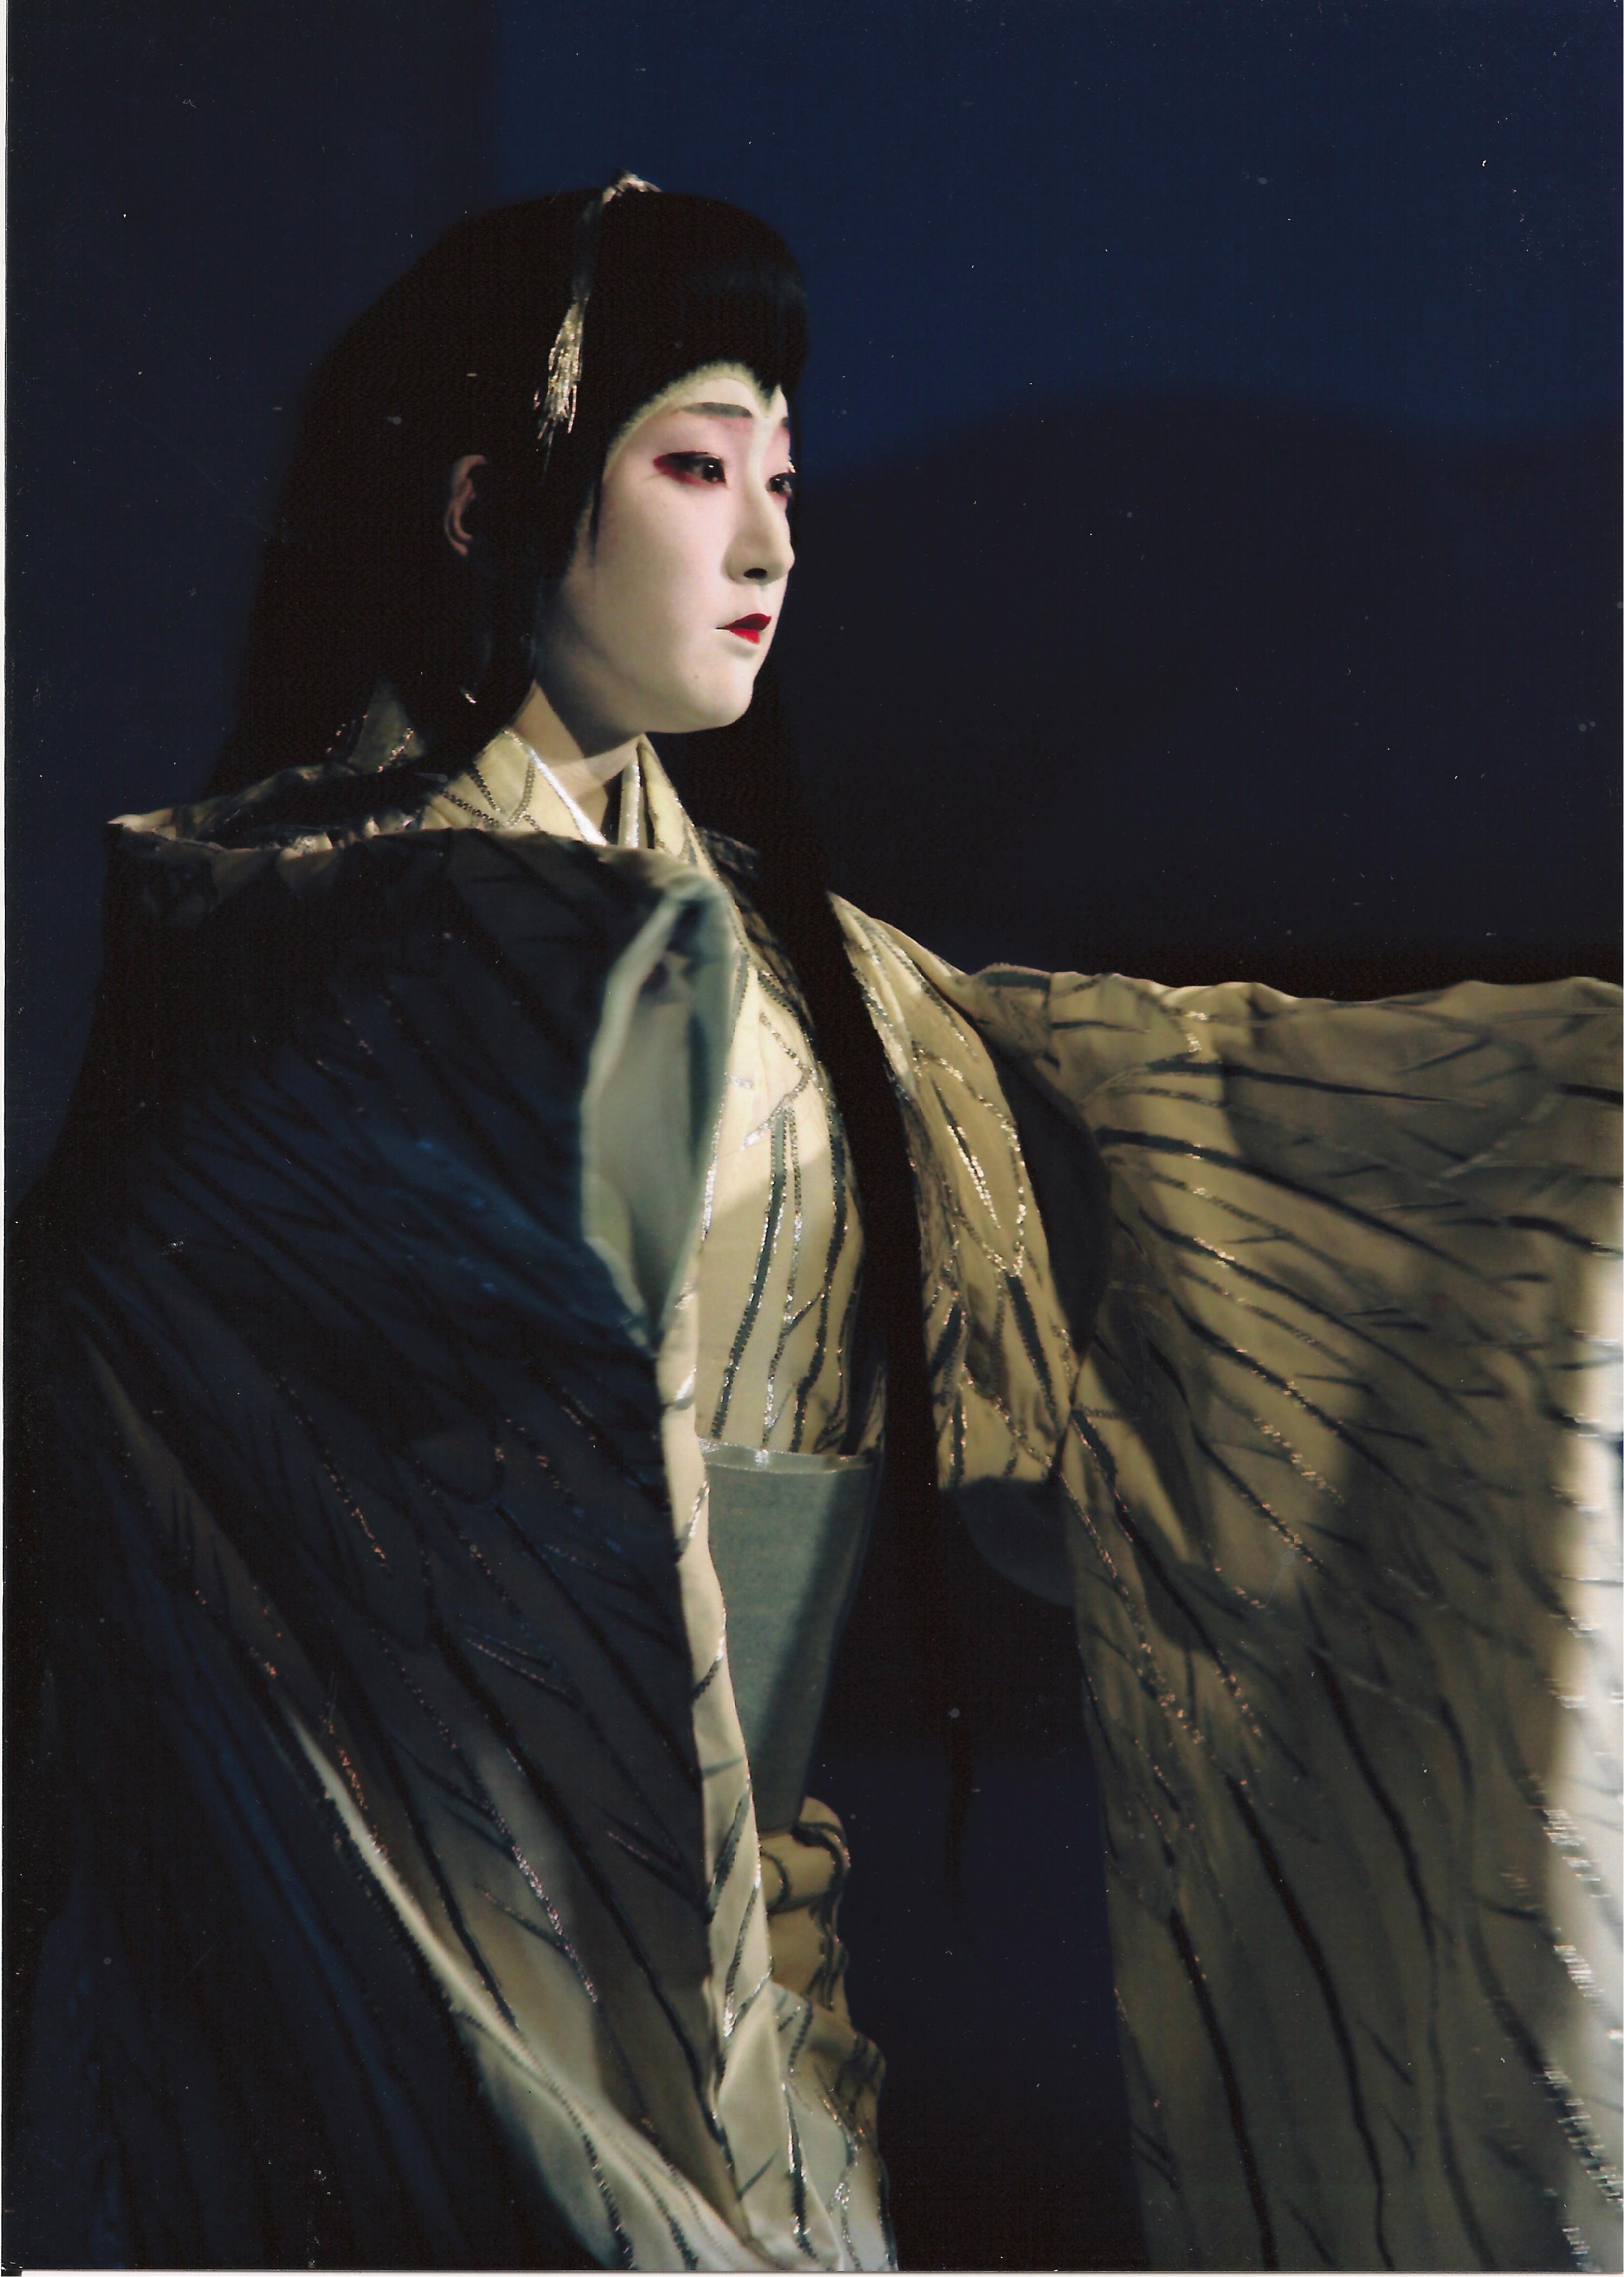 Ayuko Izumi at the National Theater Tokyo